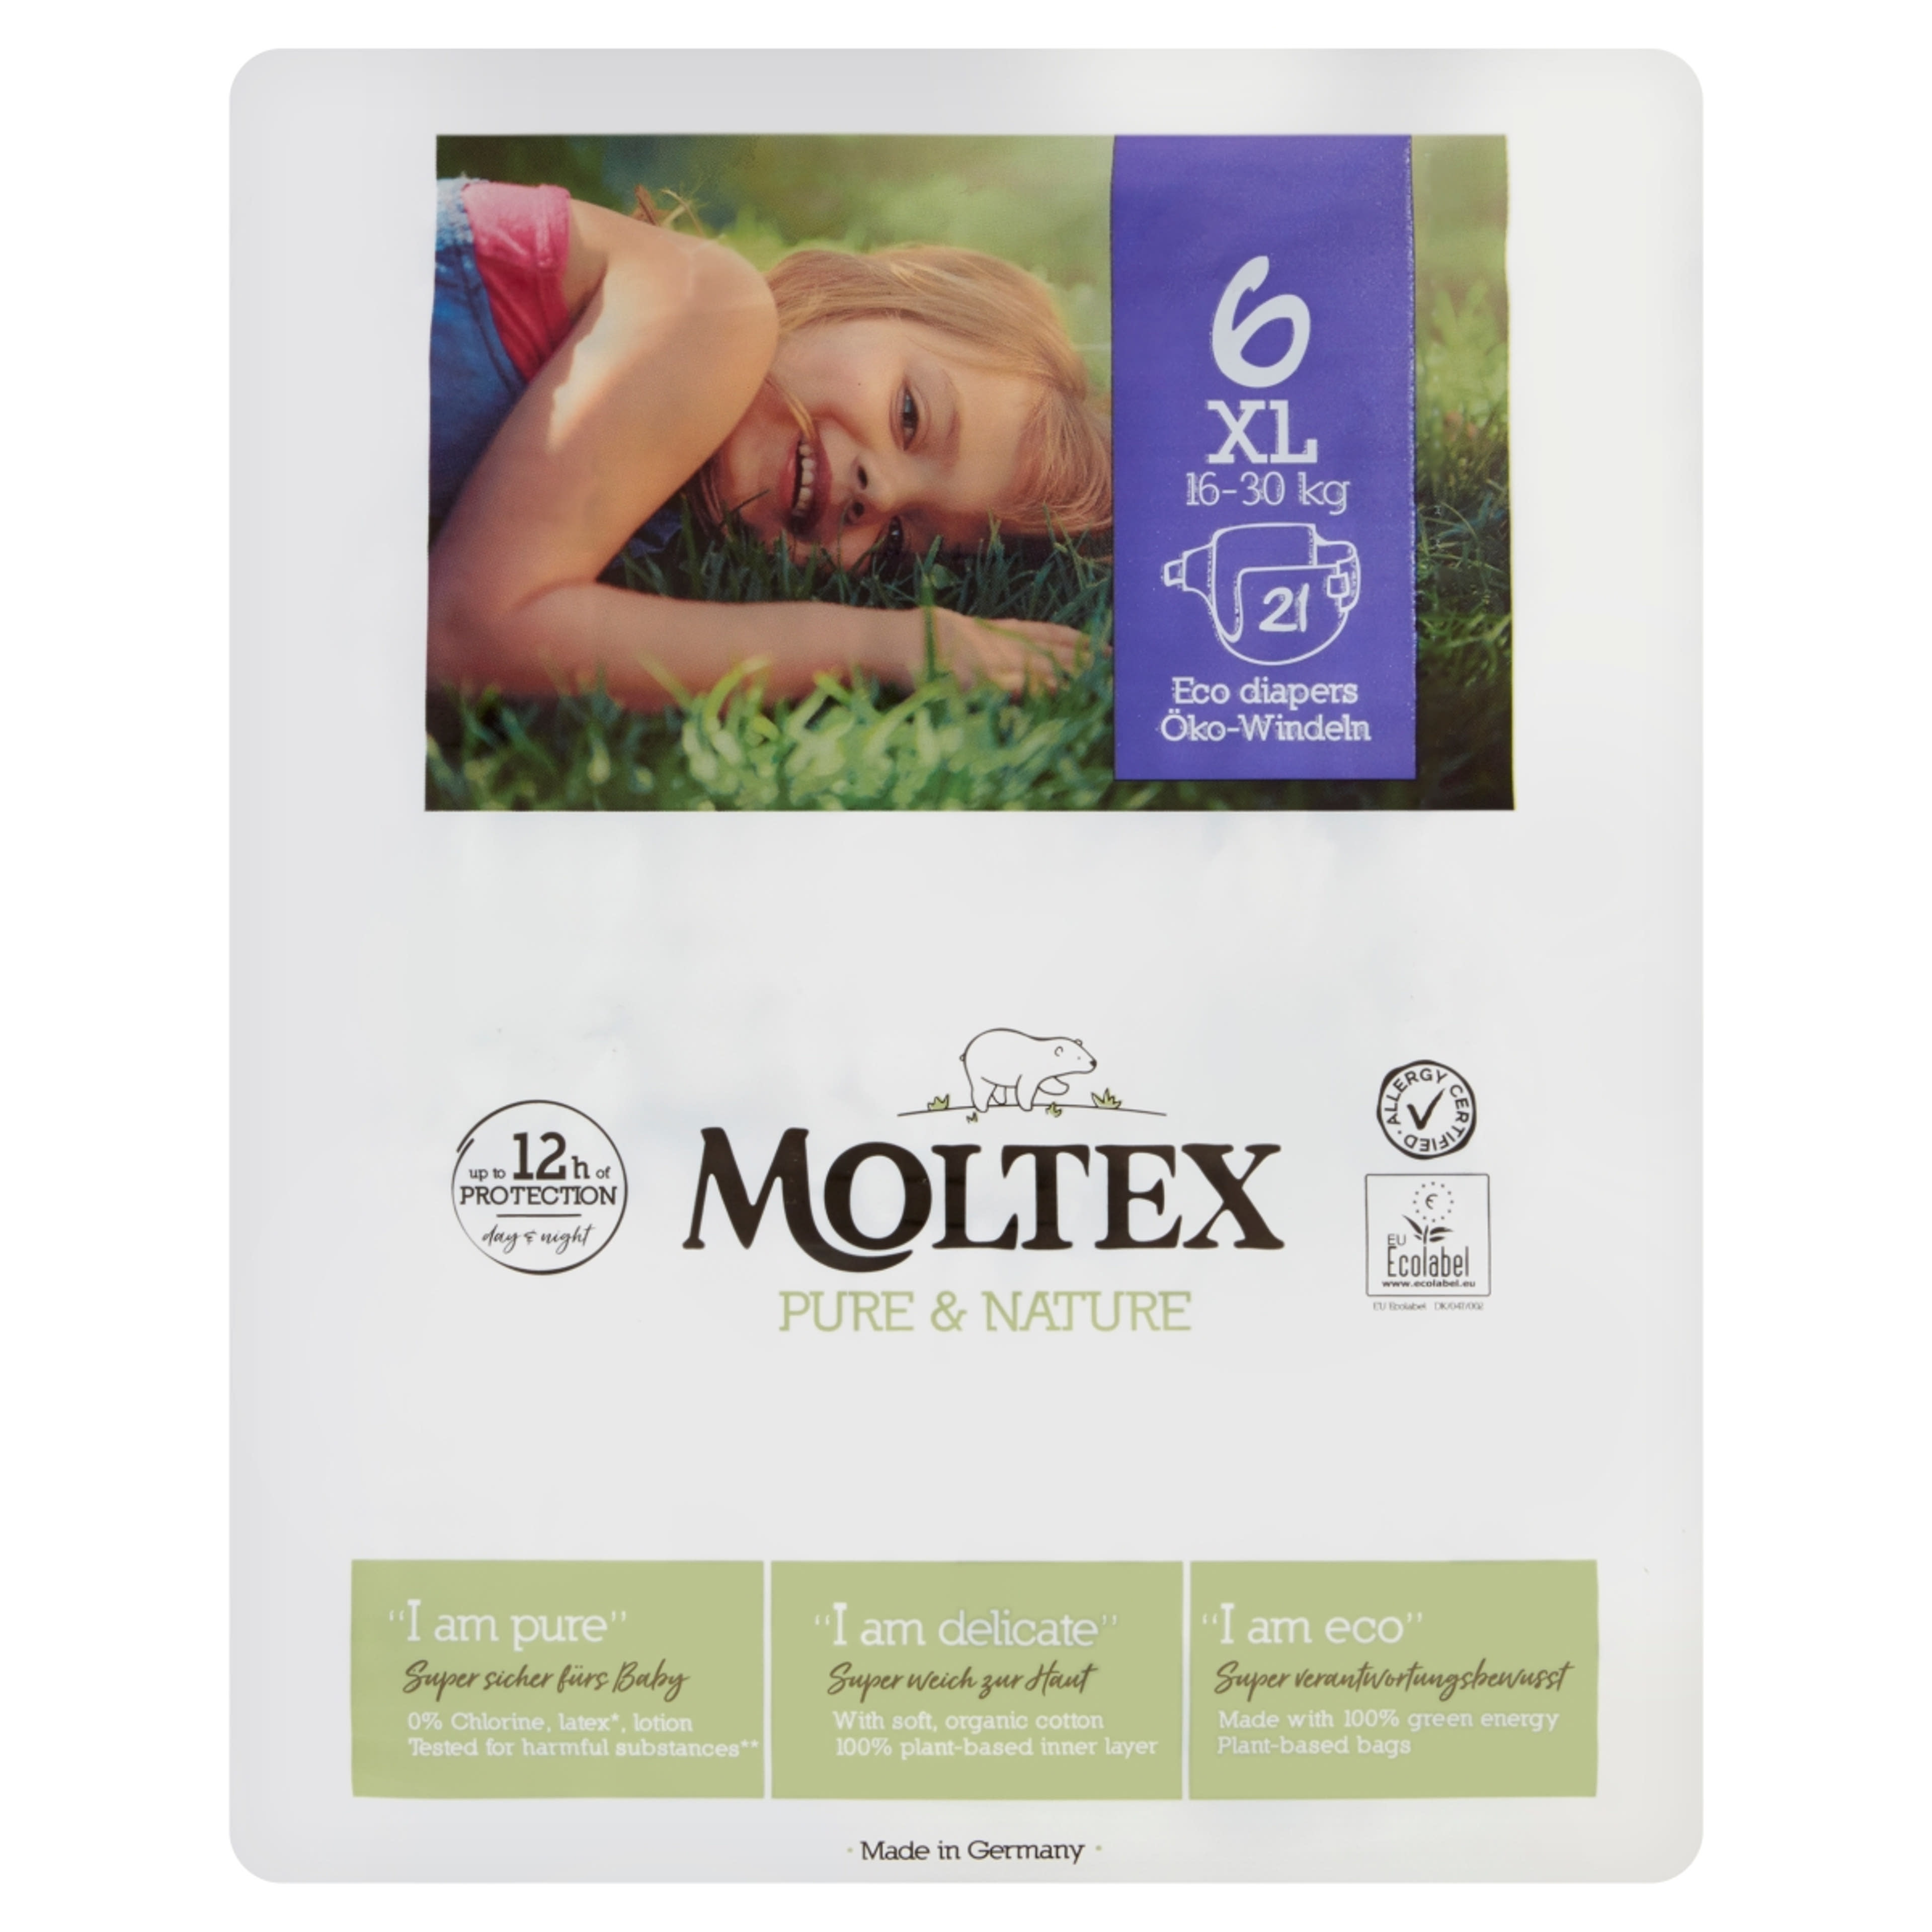 Moltex Pure&Nature XL öko pelenka 16-30 kg - 21 db-1